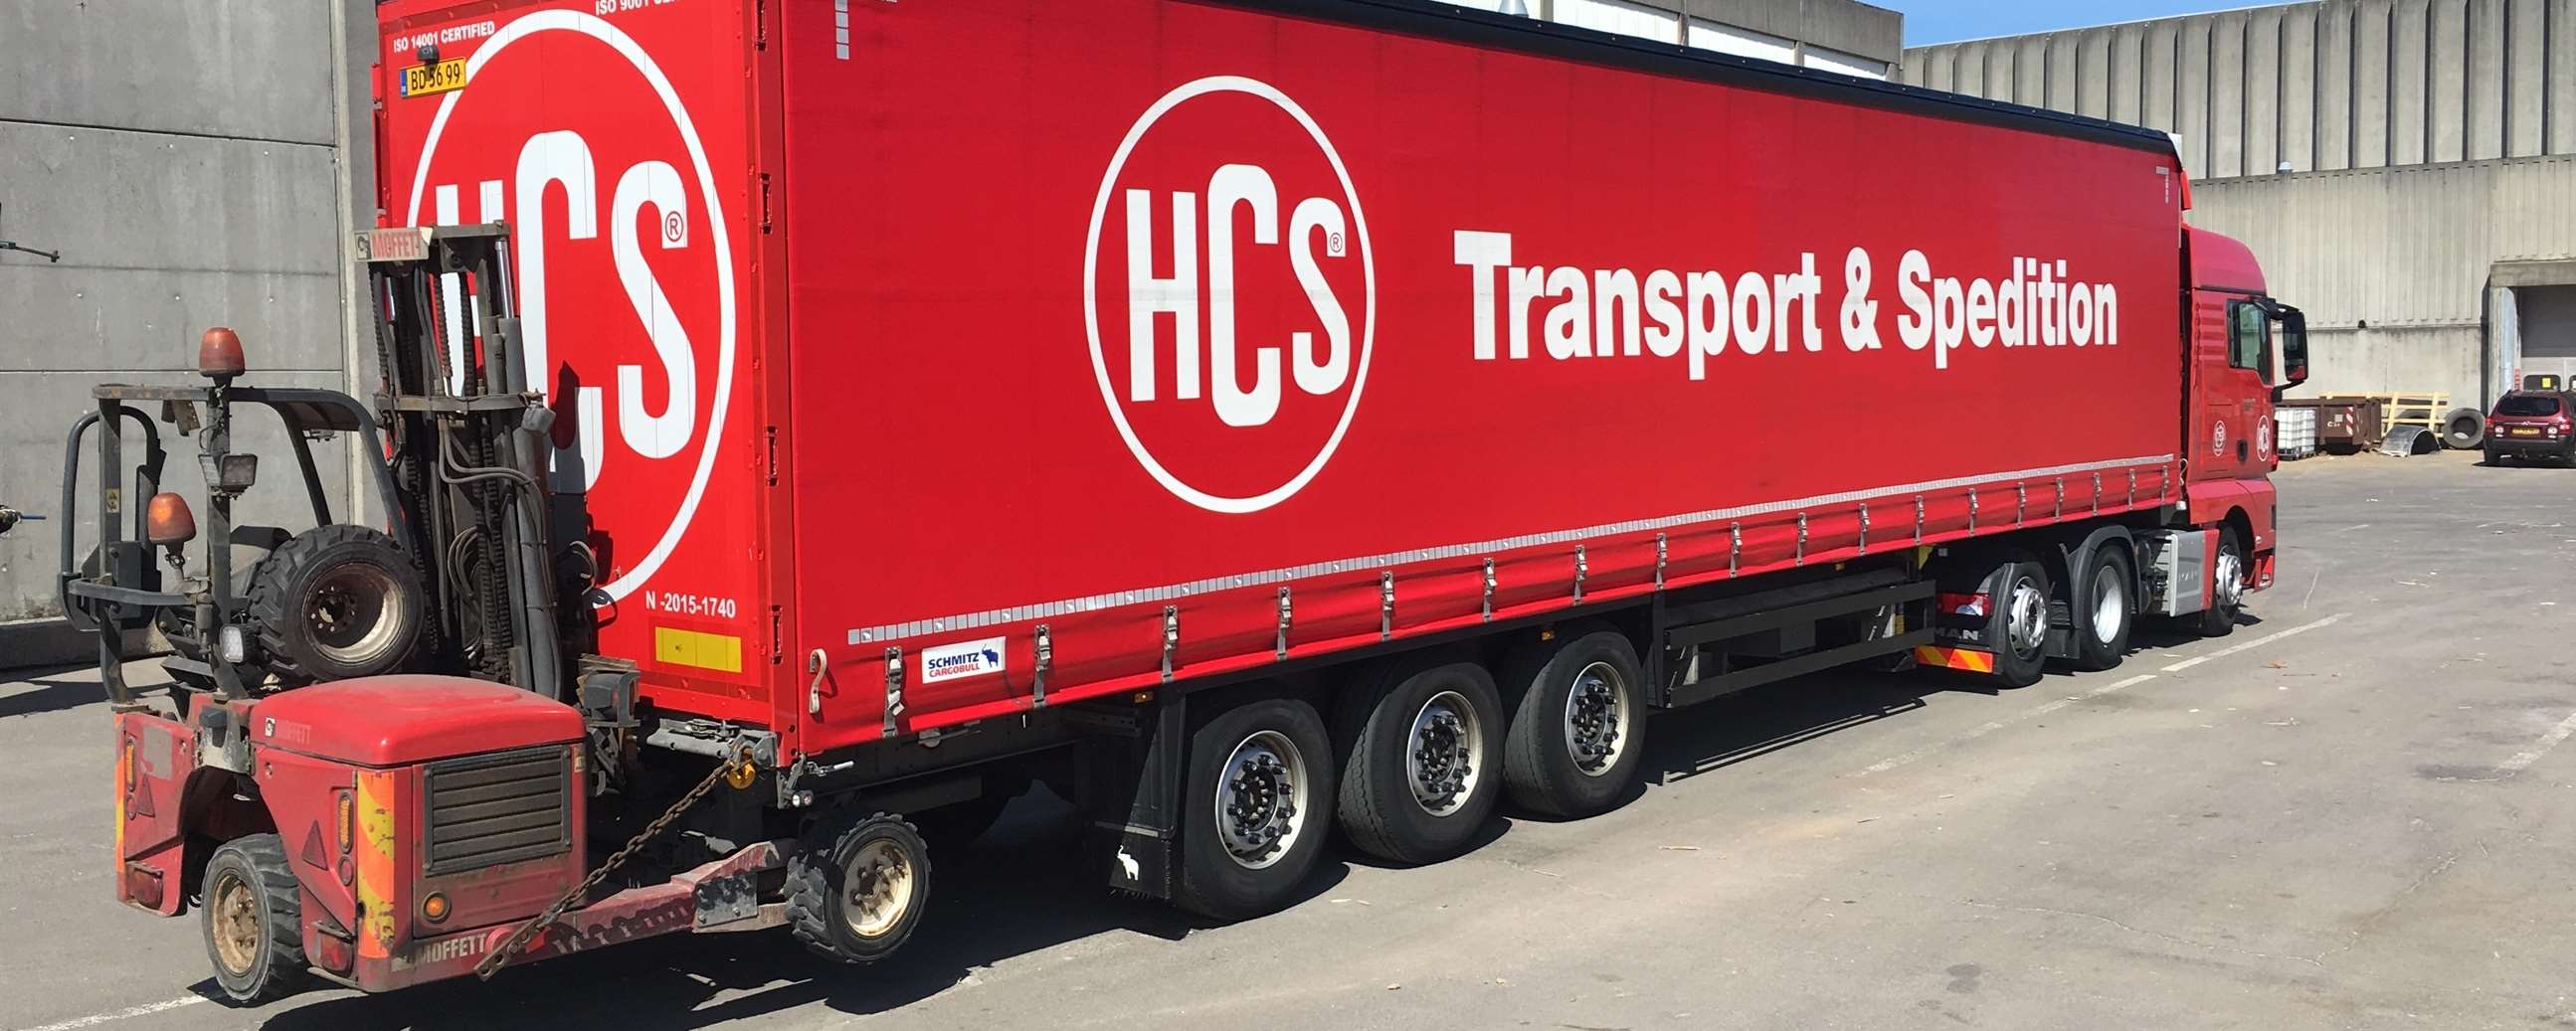 HCS tilbyder vejtransport i hele Europa - blandt andet med gardintrailere med medbringertruck